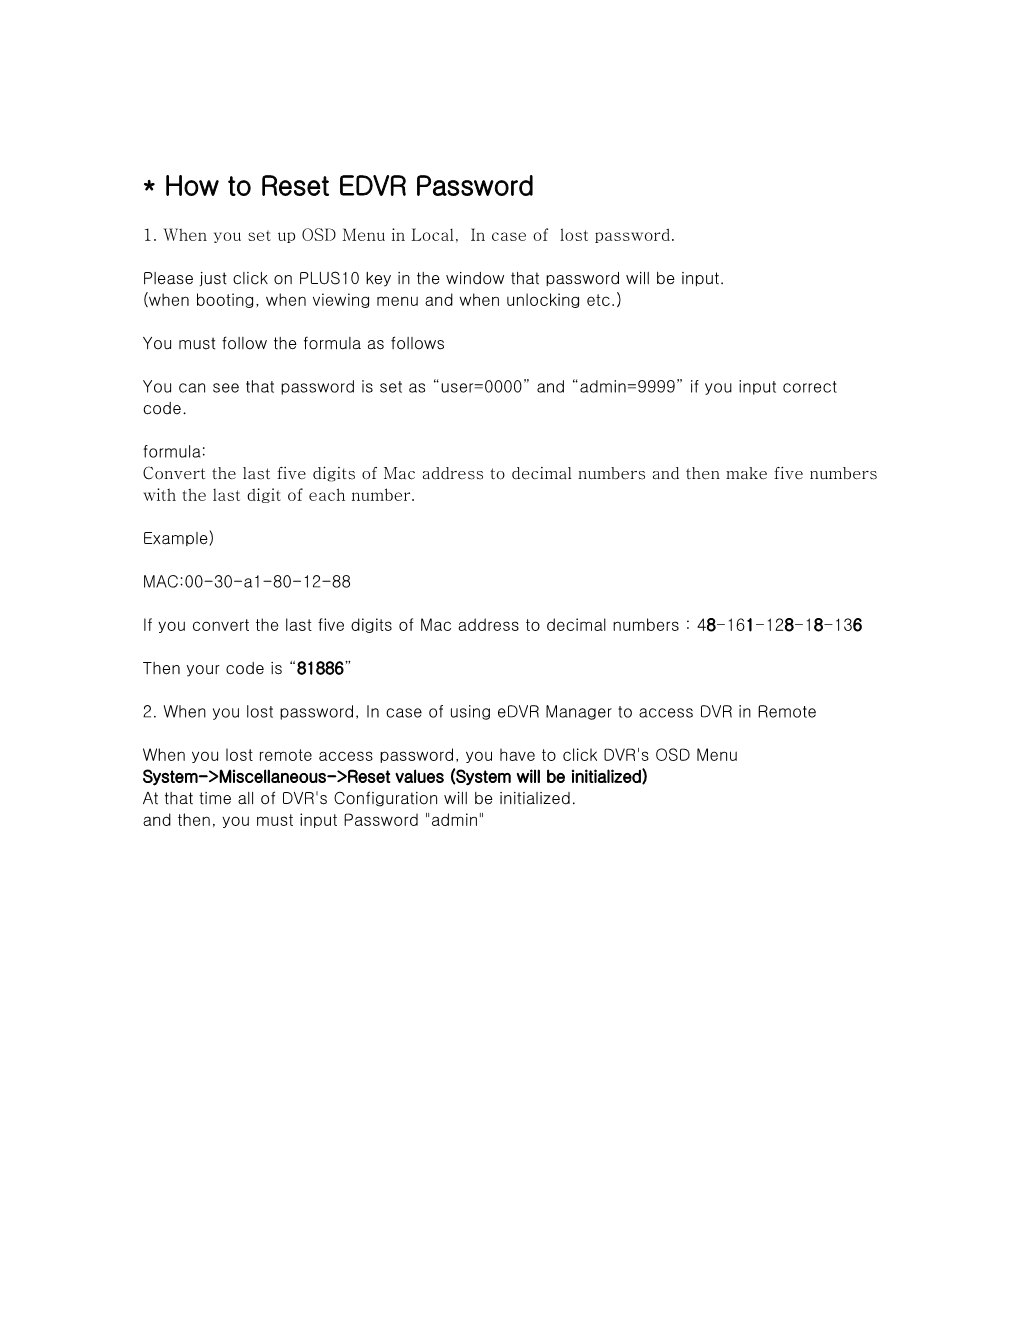 * EDVR Password Reset 방법